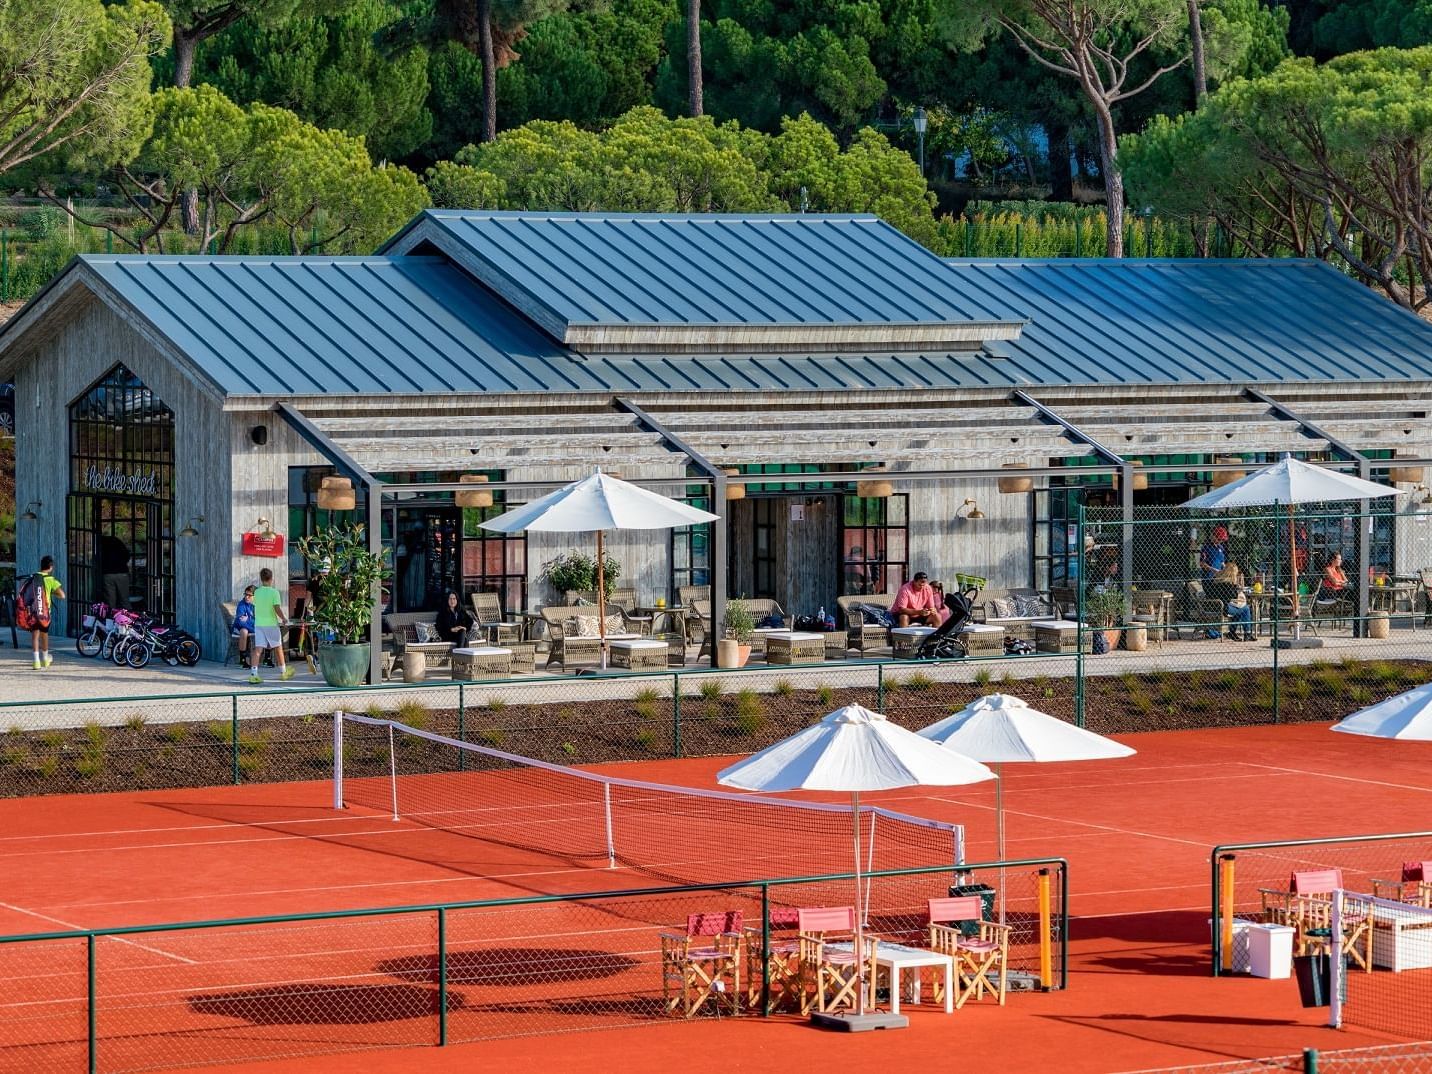 Exterior Tennis court -The Magnolia Hotel 